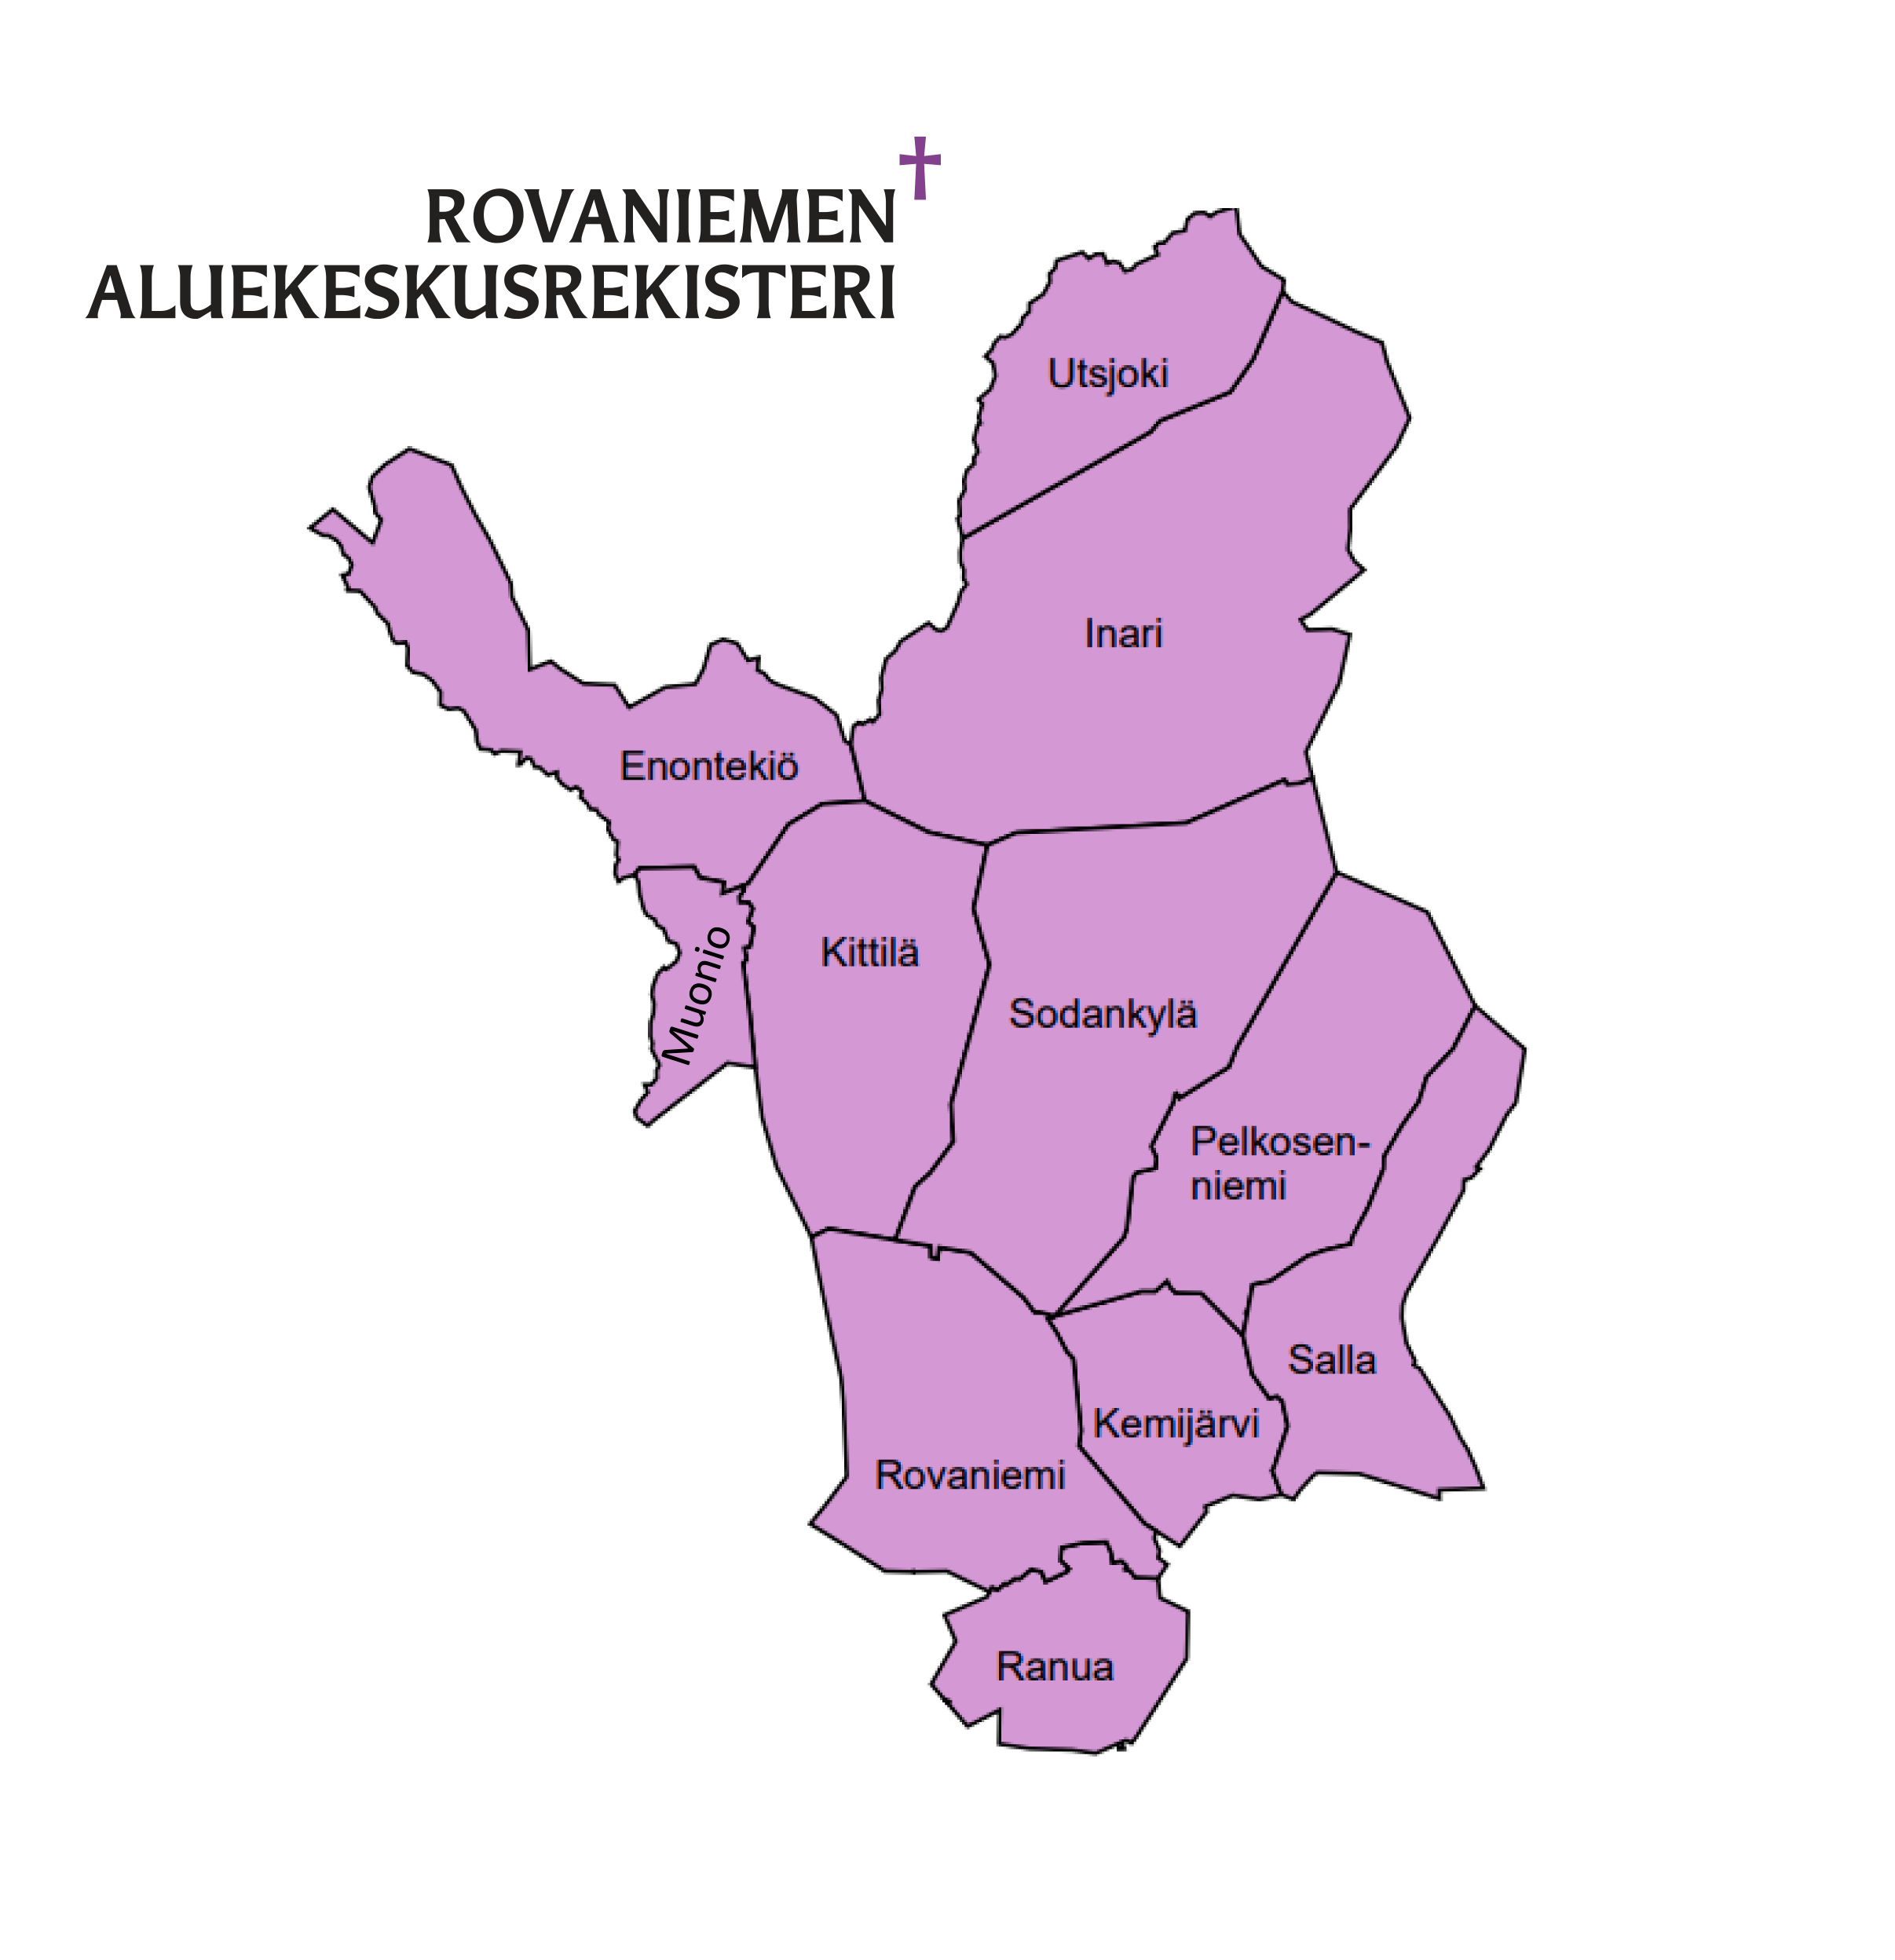 Kartta Rovaniemen aluekeskusrekisterin alueesta.